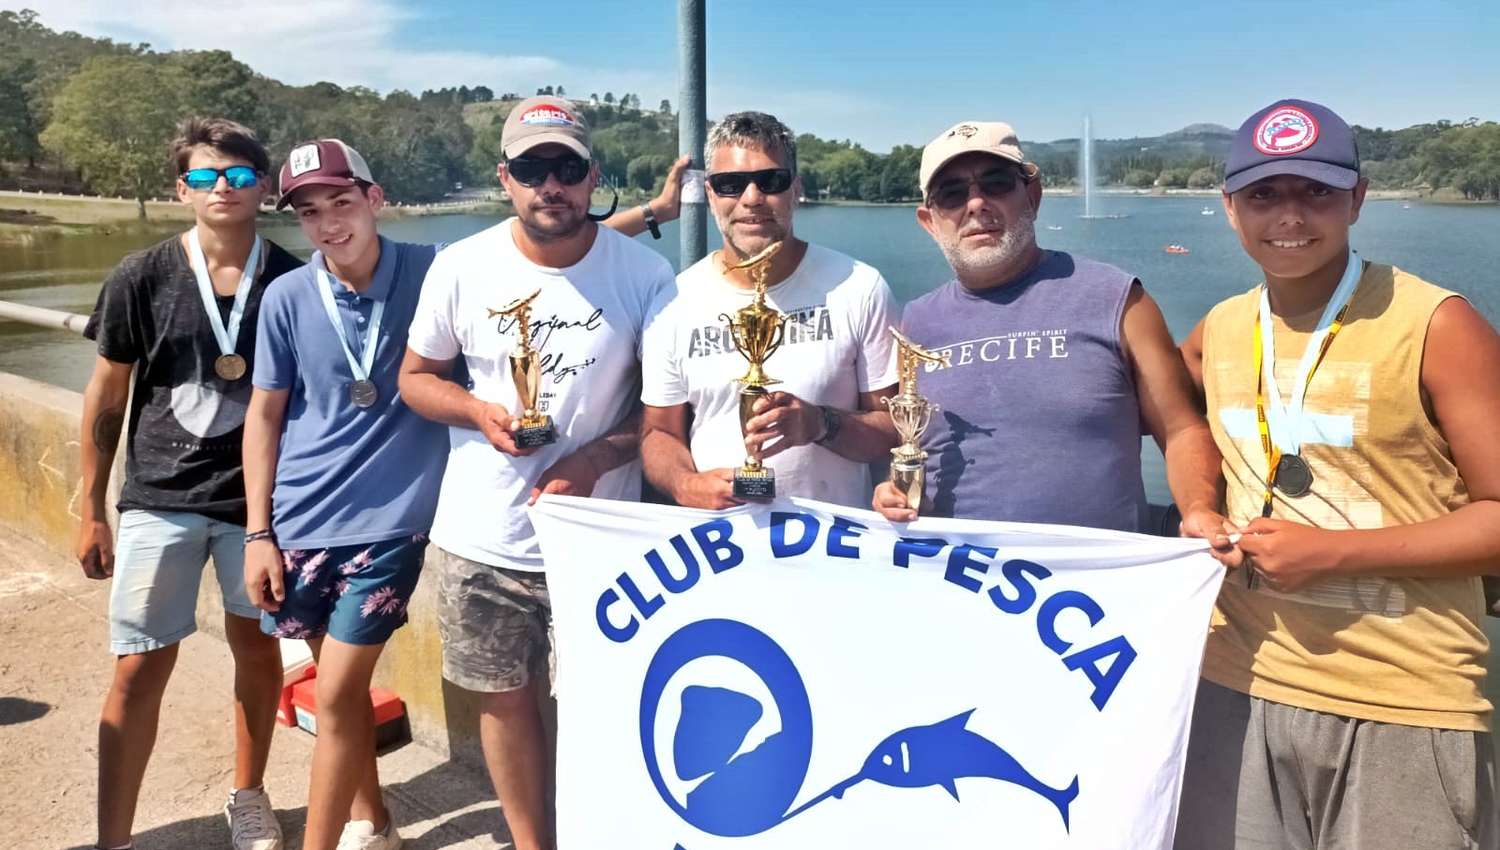 Los podios del Club de Pesca.